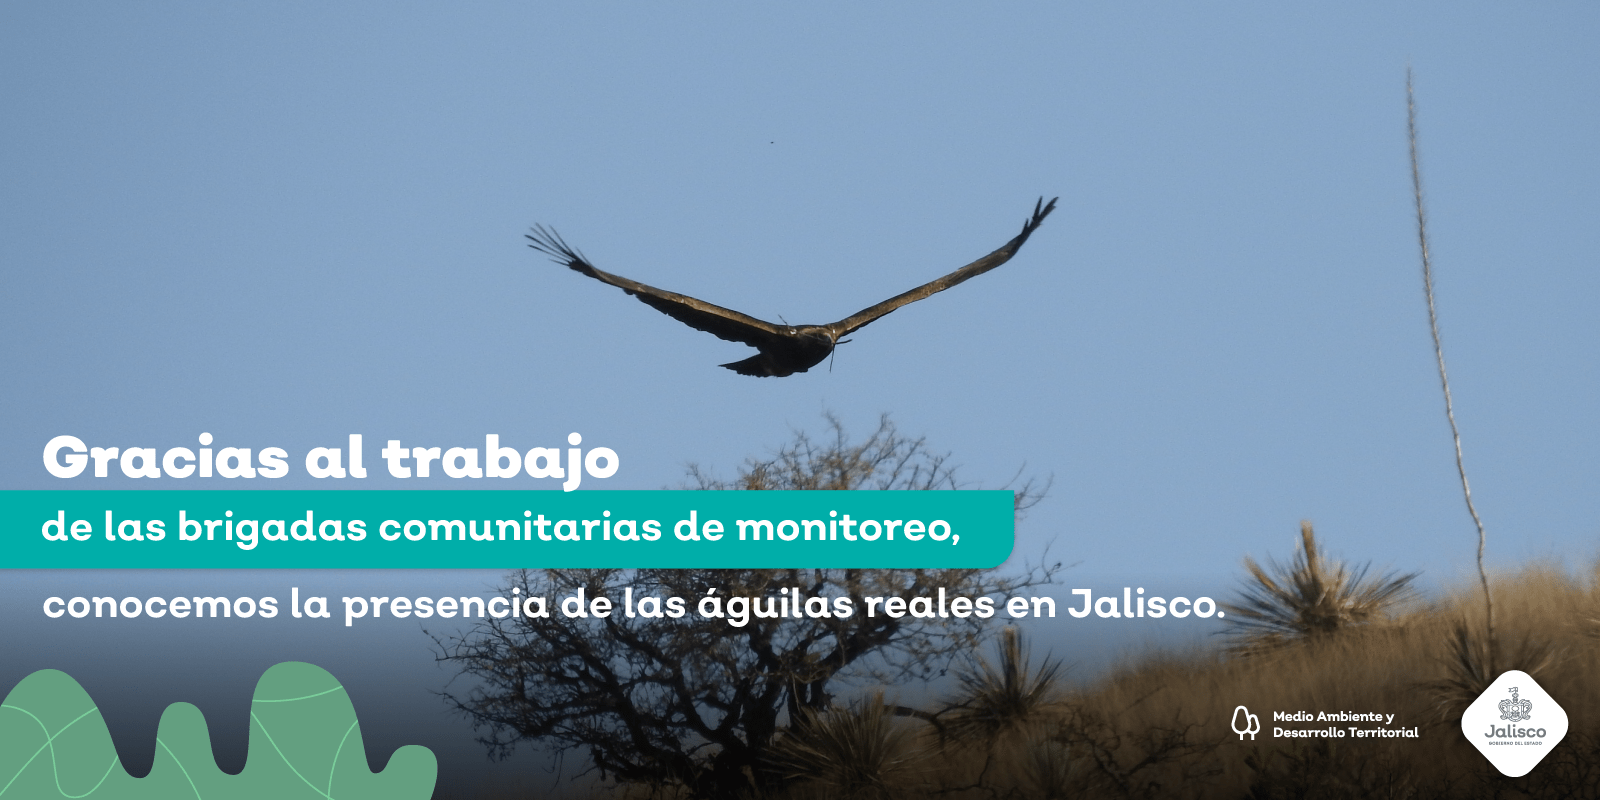 Registramos el nacimiento exitoso de dos águilas reales en Jalisco,  resultado de las buenas acciones ambientales | Gobierno del Estado de  Jalisco